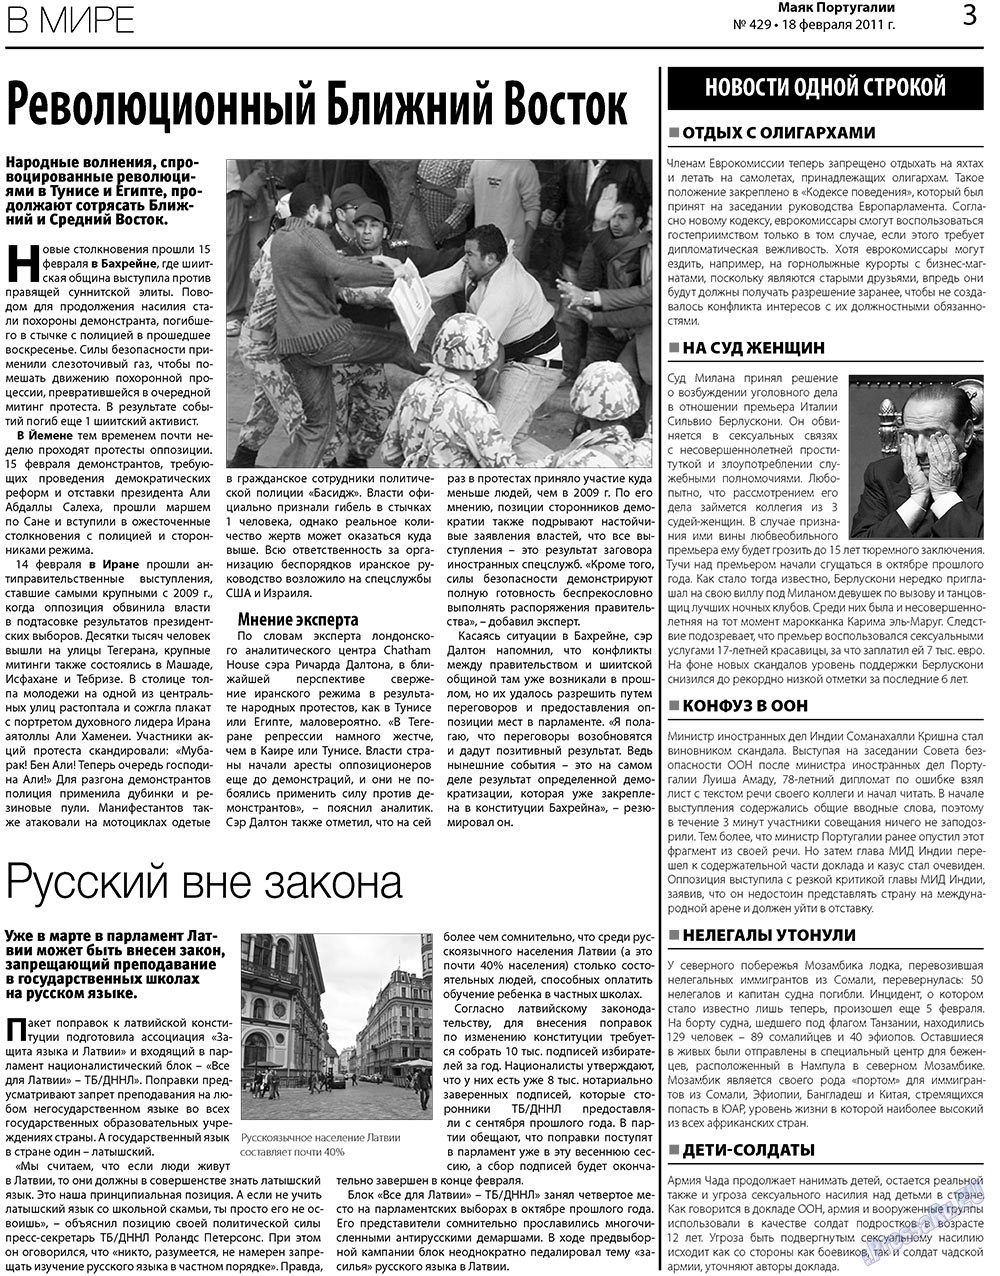 Маяк Португалии (газета). 2011 год, номер 429, стр. 3